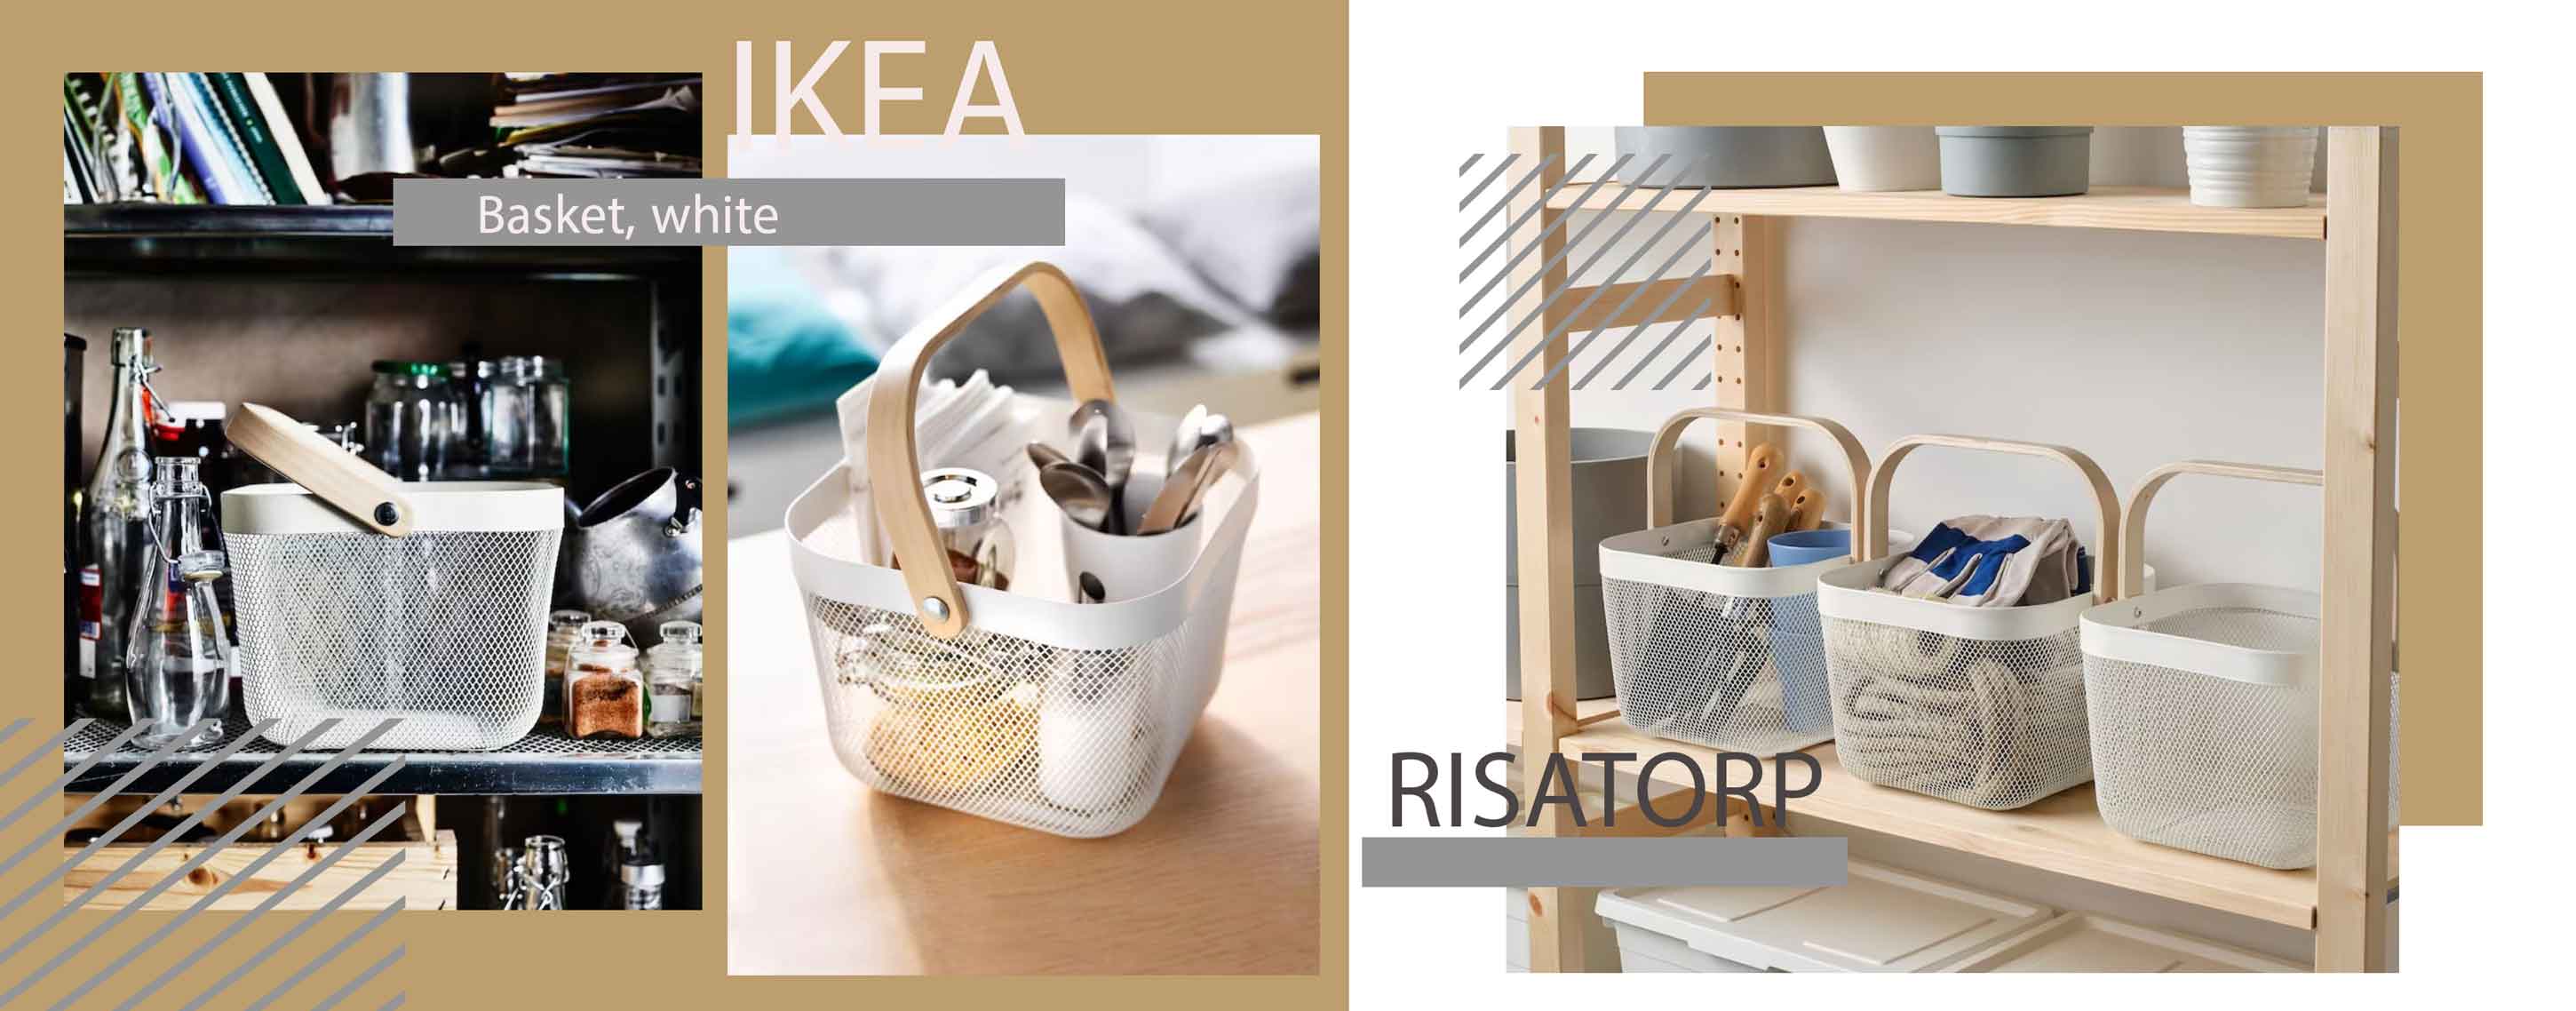 سبد ایکیا مدل IKEA RISATORP سایز 26 سانتی متر